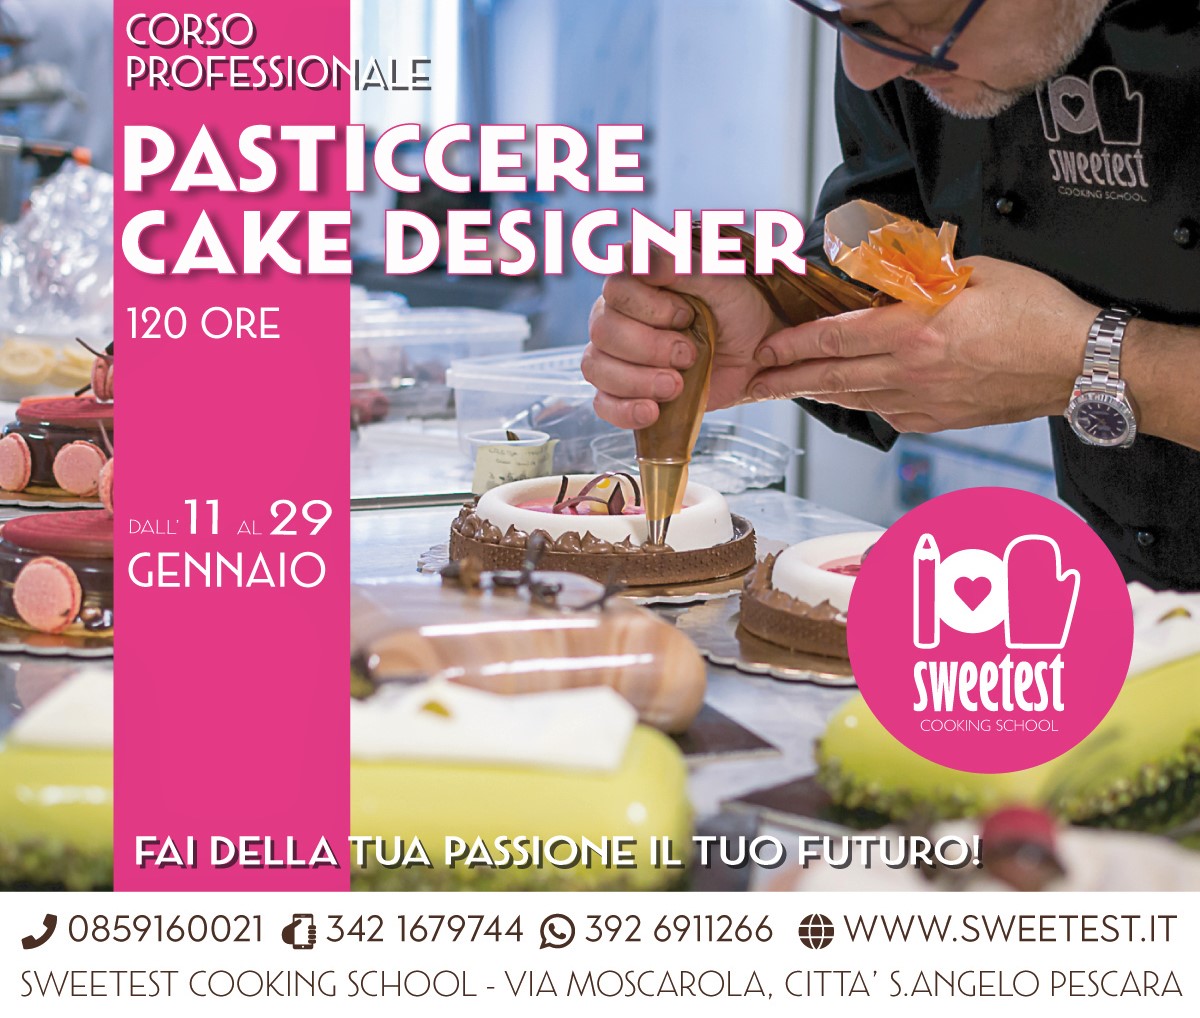 Corsi di pasticceria e cake design Sweetest – Corso professionale di  Pasticceria e Cake Design 120 ORE – dall'11 al 29 gennaio 2021